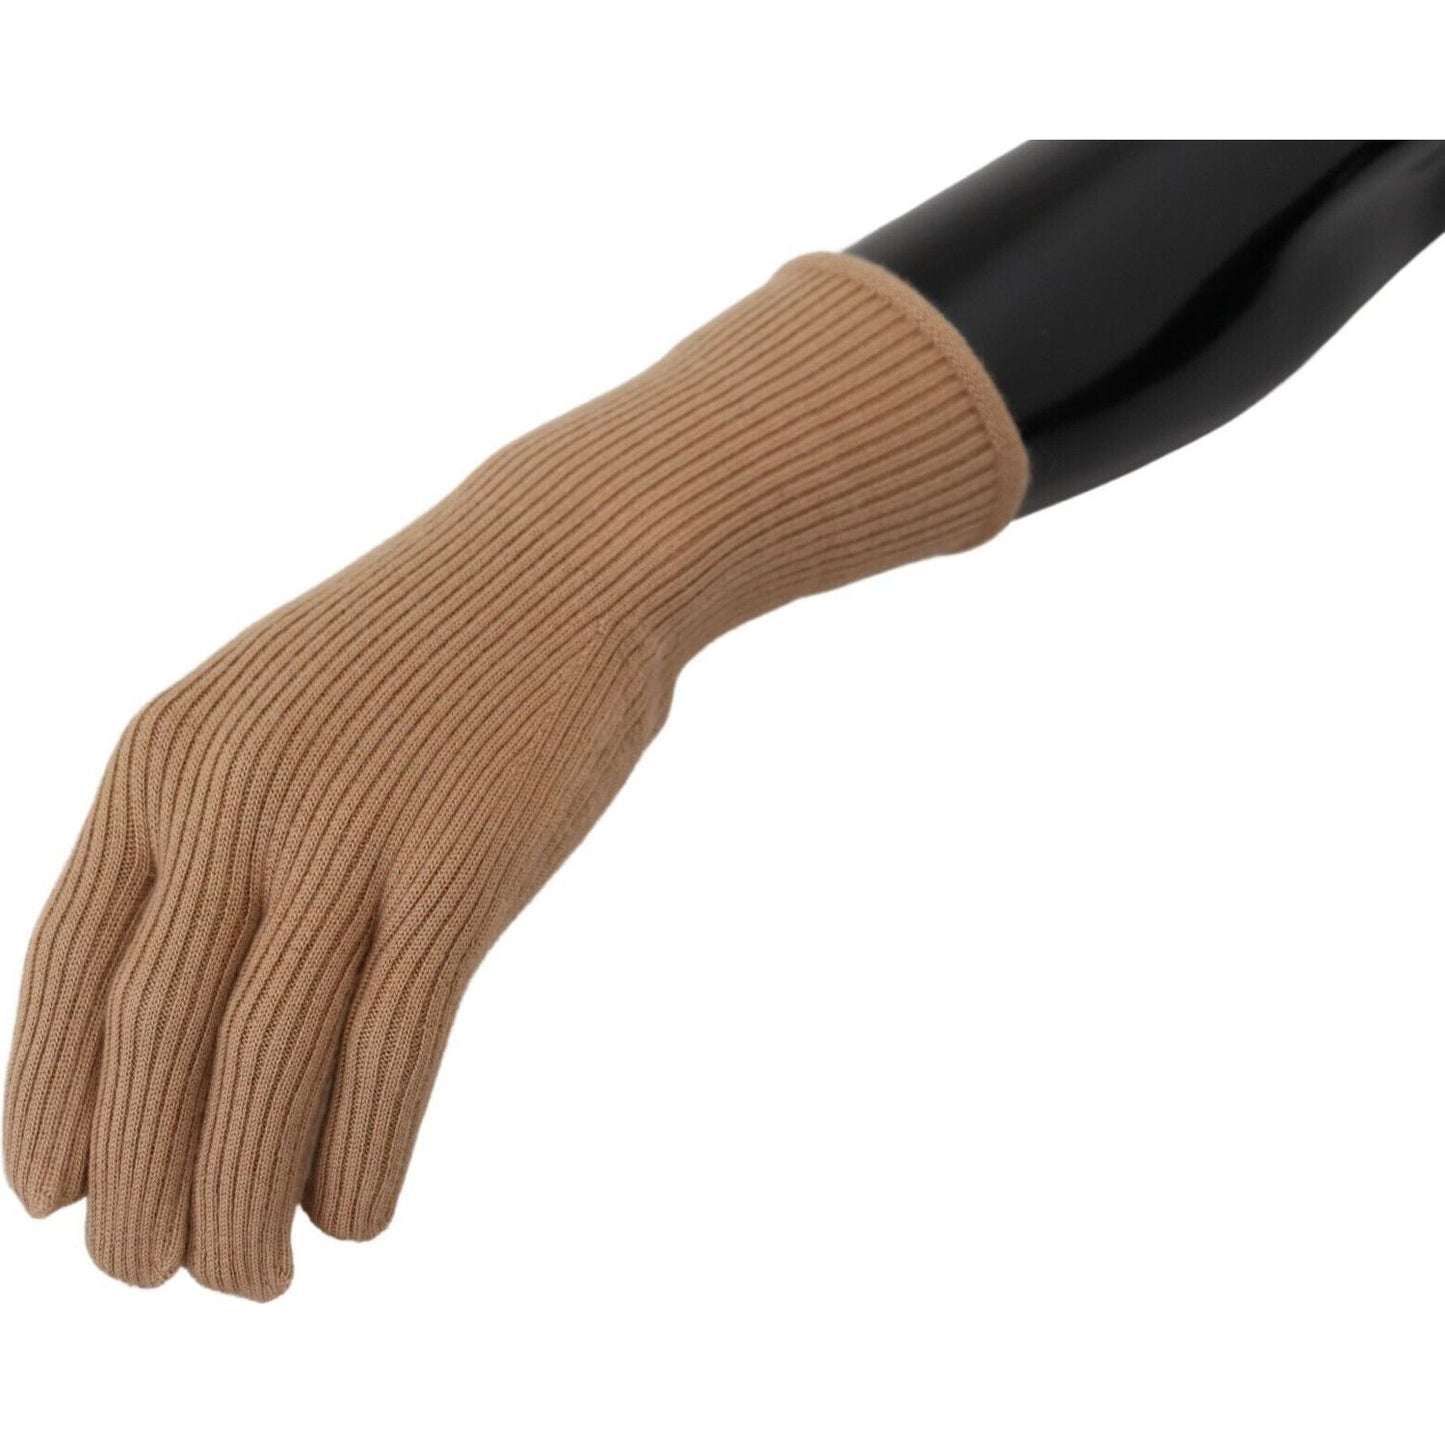 Dolce & Gabbana Elegant Beige Cashmere Winter Gloves beige-cashmere-knitted-hands-mitten-mens-gloves s-l1600-17-4-b5ae6388-354.jpg